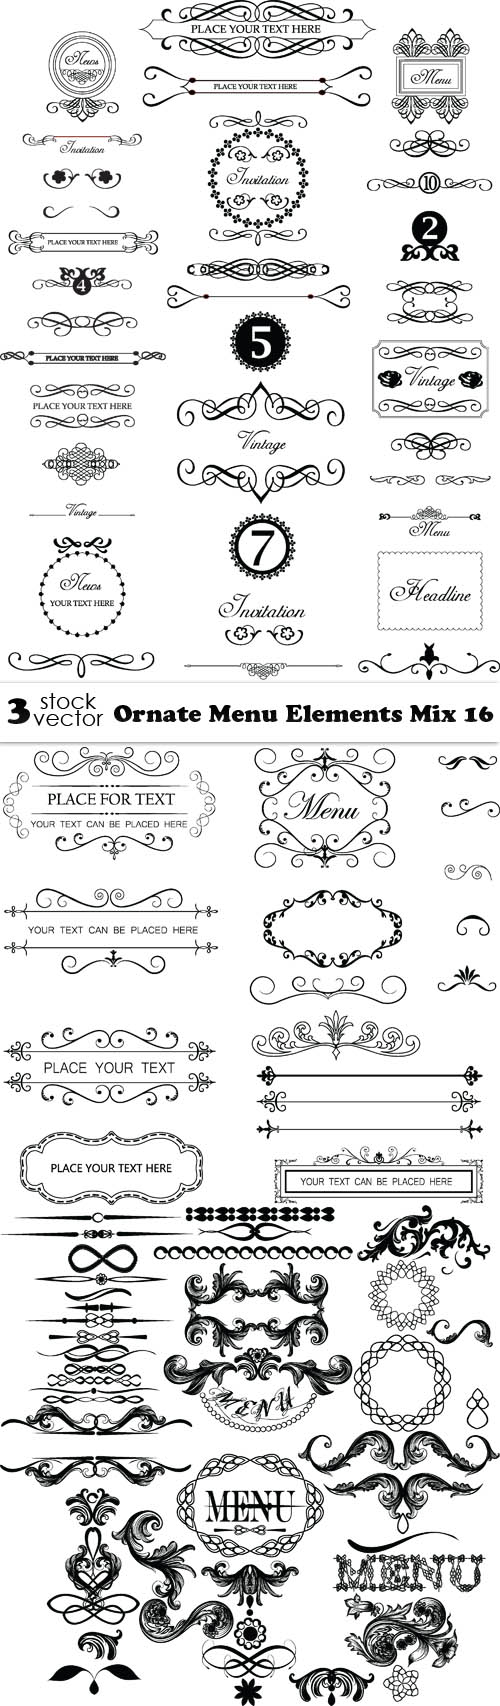 Vectors - Ornate Menu Elements Mix 16